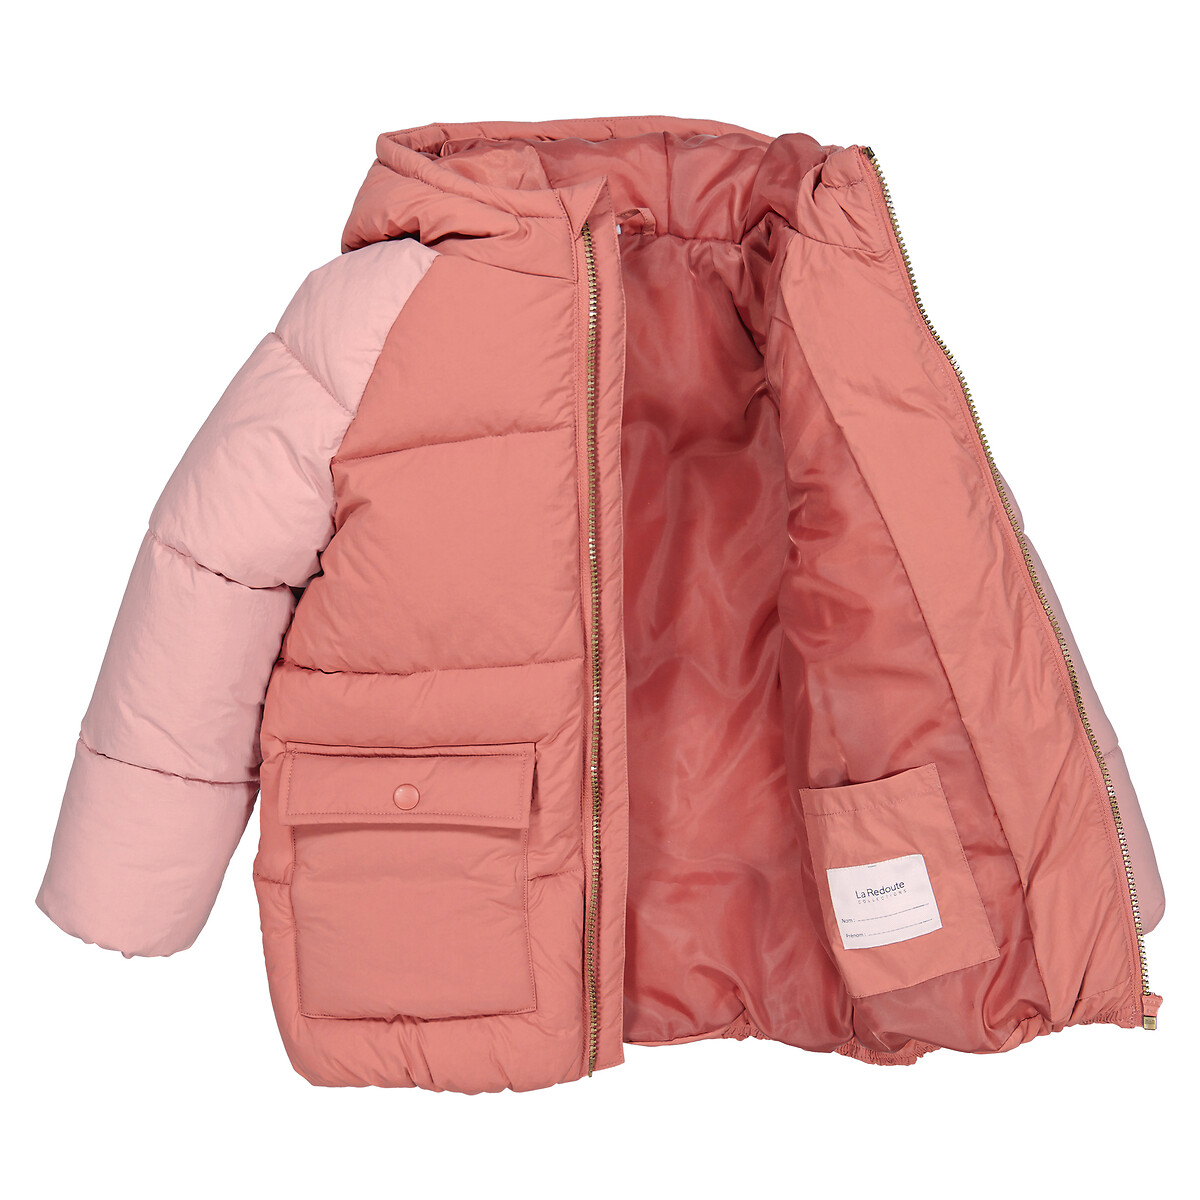 Куртка Стеганая с капюшоном 4 года - 102 см розовый LaRedoute, размер 4 года - 102 см - фото 5